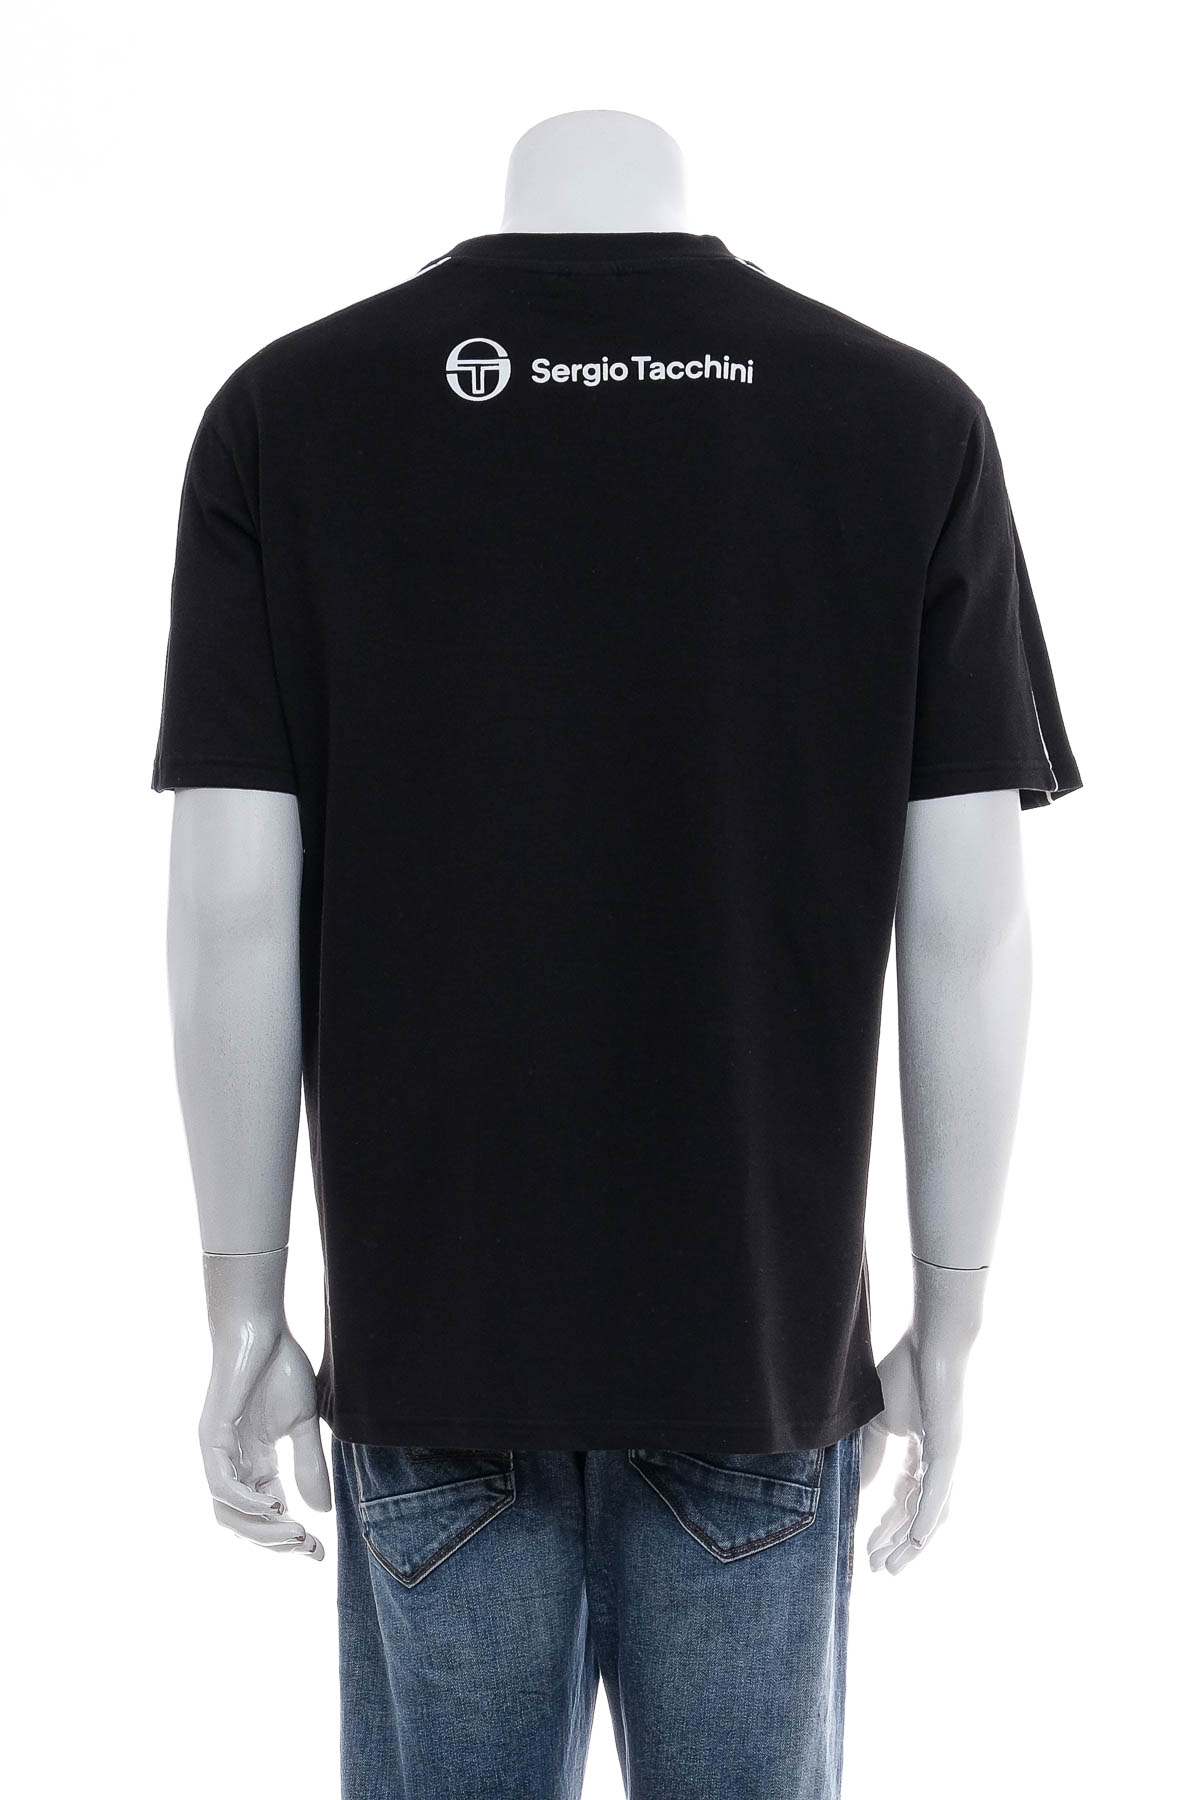 Ανδρικό μπλουζάκι - Sergio Tacchini - 1